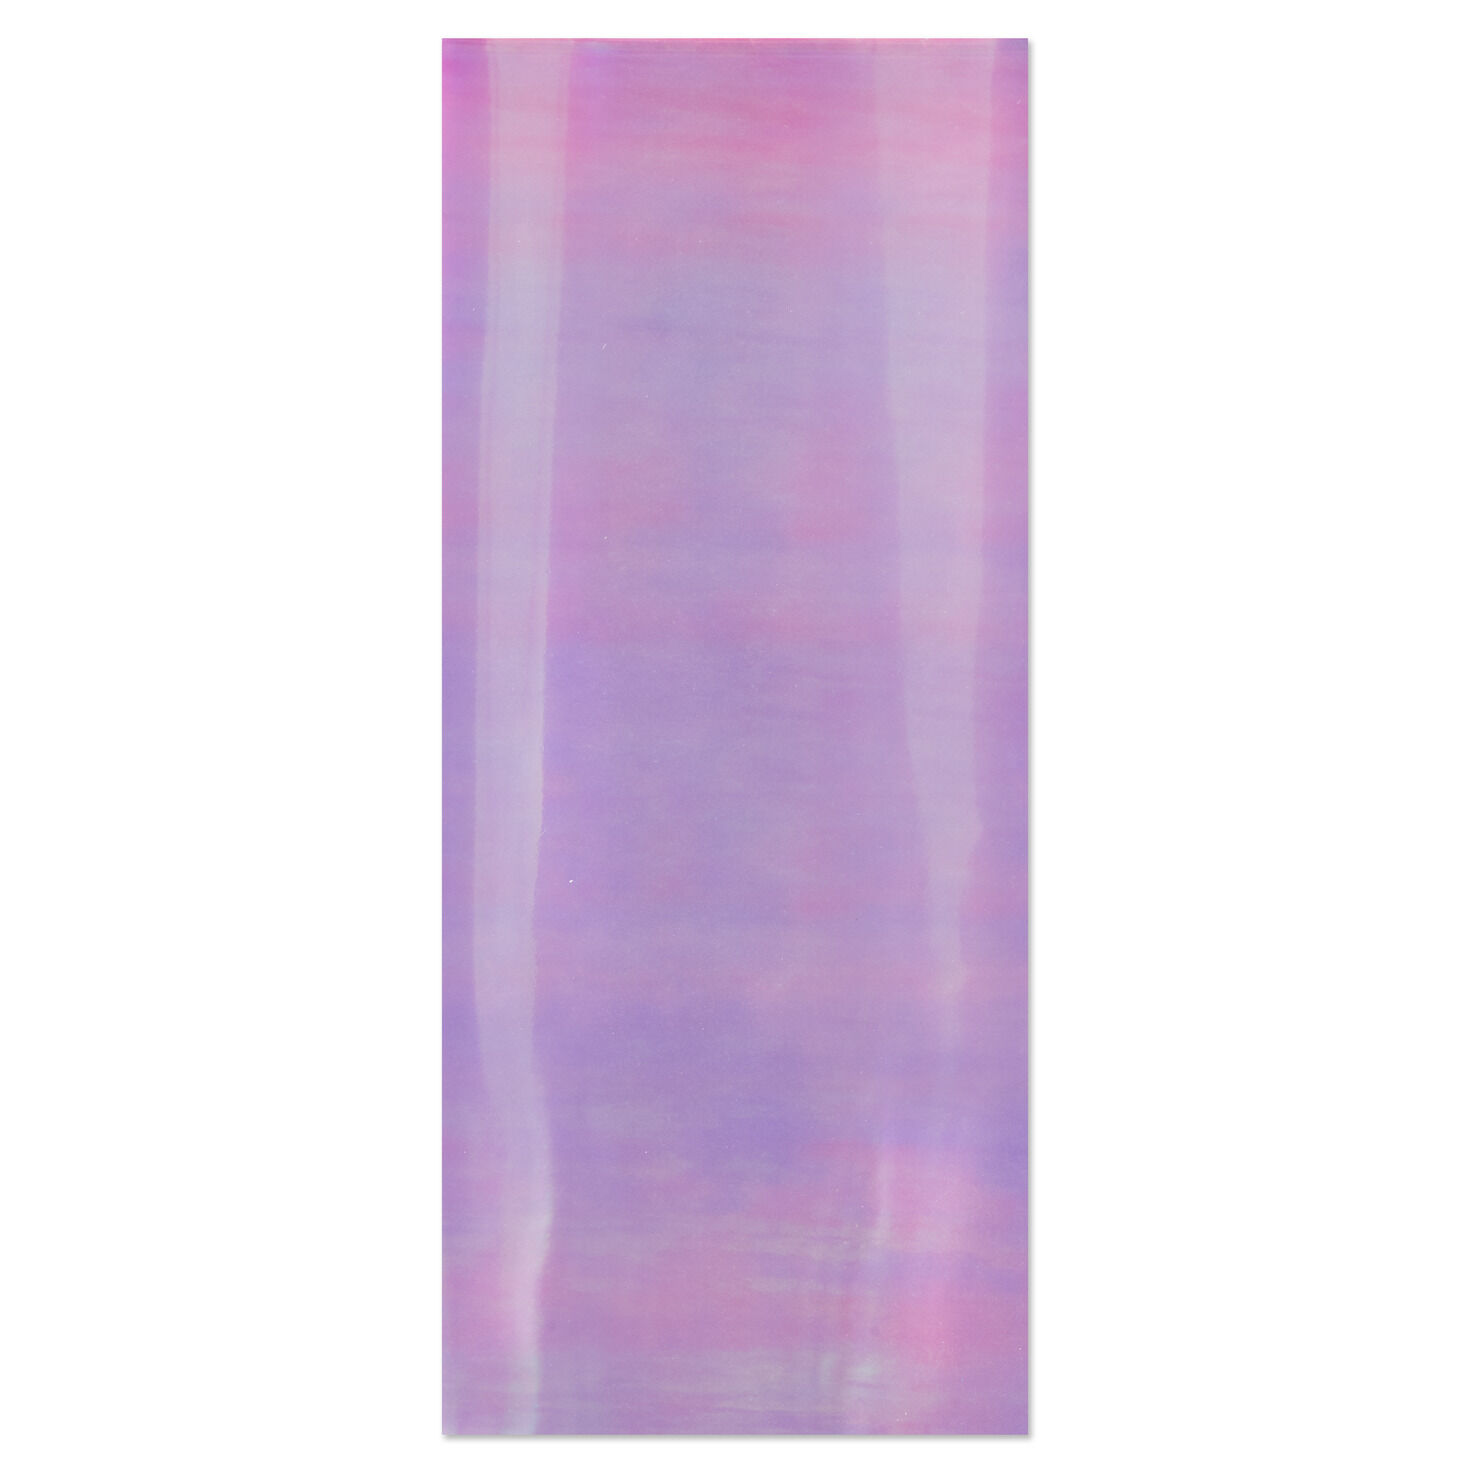 Iridescent Cellophane Tissue Paper, 4 sheets - Tissue - Hallmark